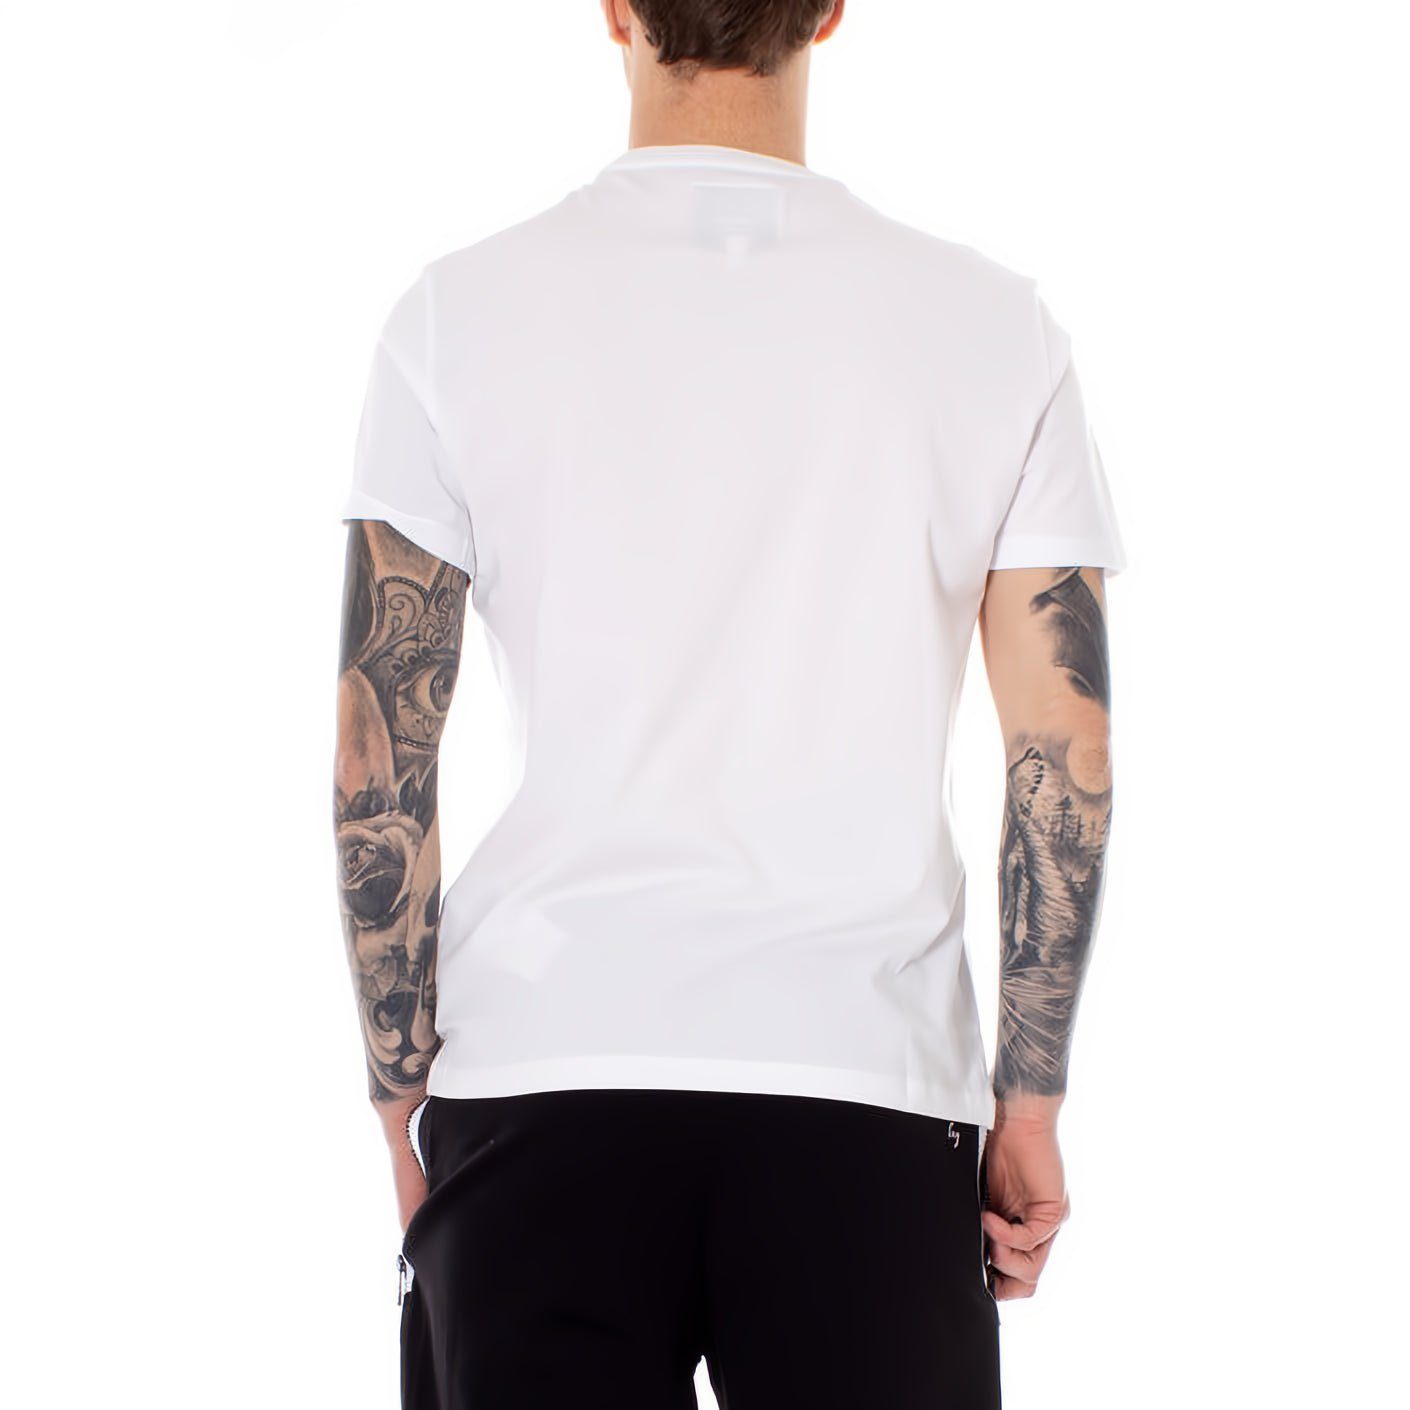 ARMANI EXCHANGE T-Shirt kurzarm, Rundhals, Kleidungskollektion! Ihre für ein Must-Have